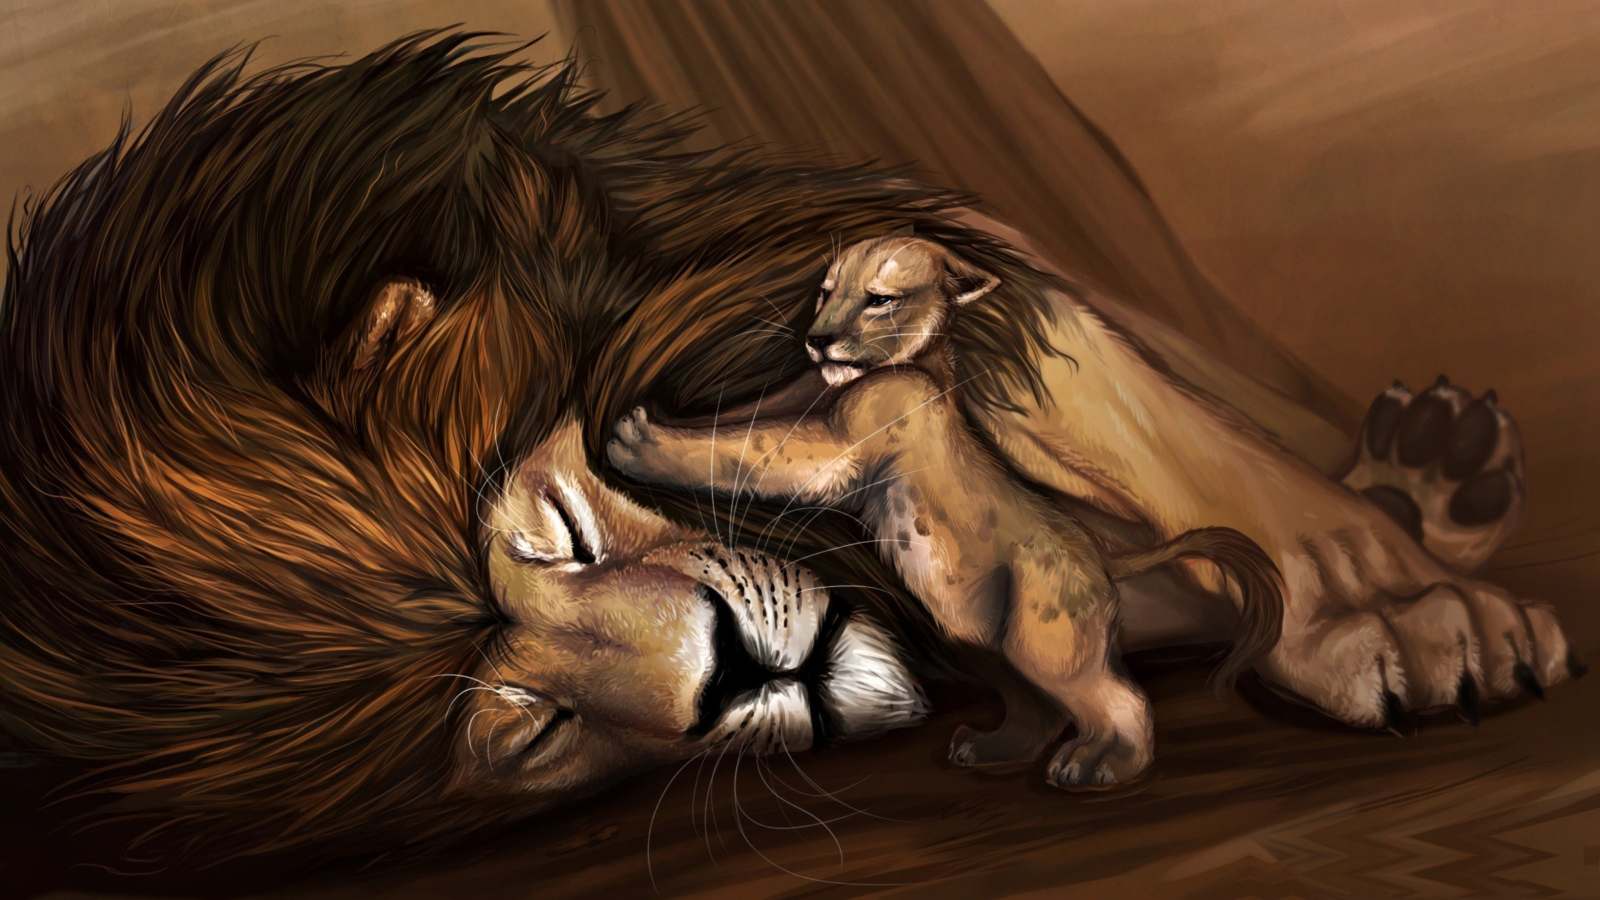 Lion King wallpaper 1600x900